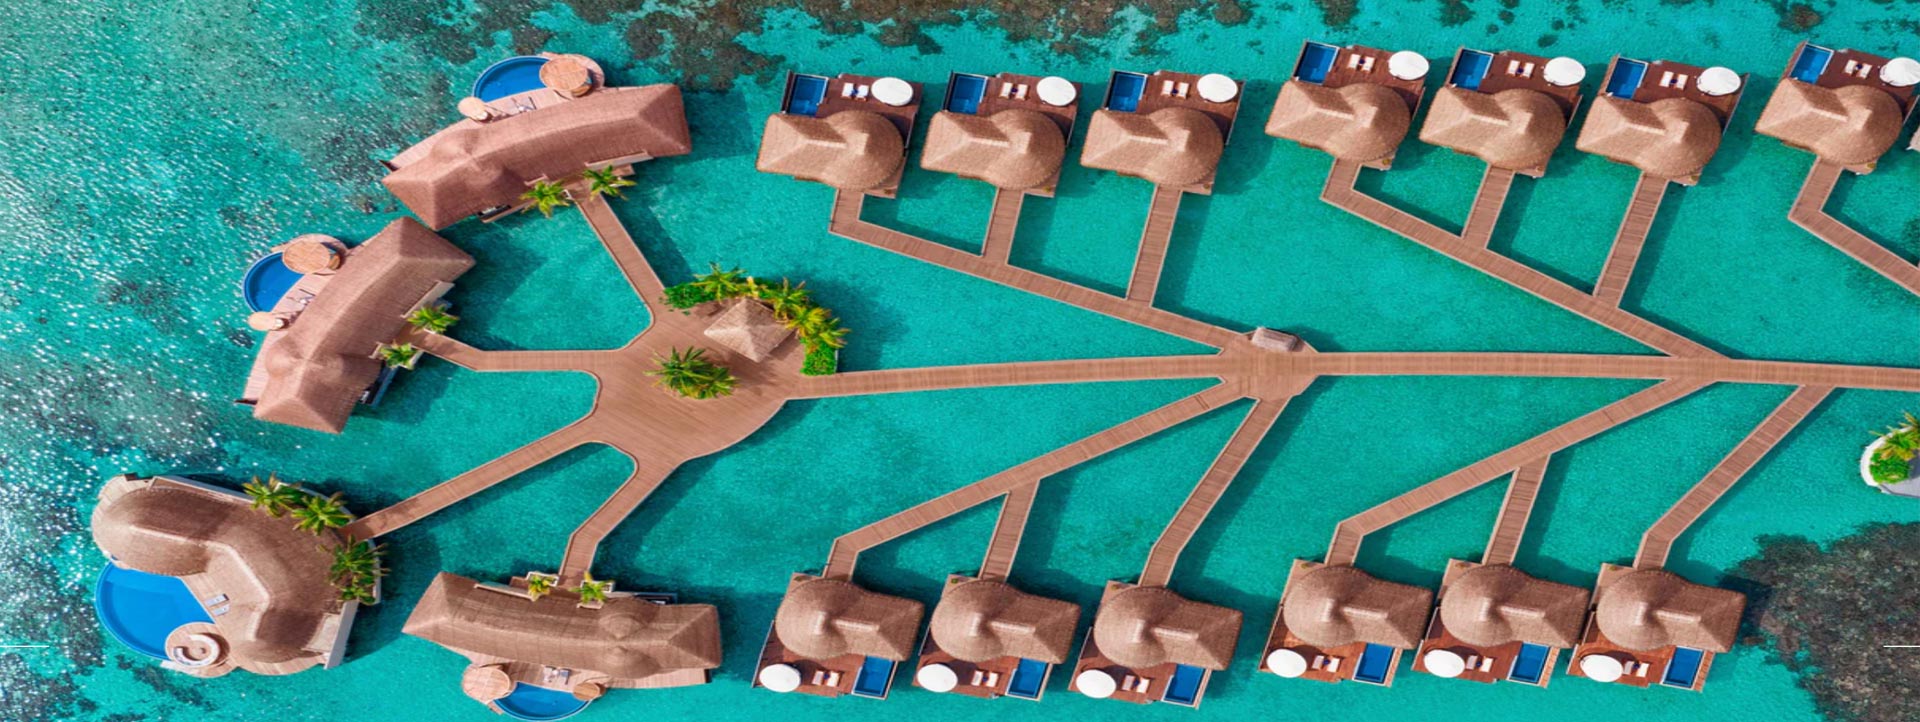 W-MALDIVES-aerial-villas-overwater